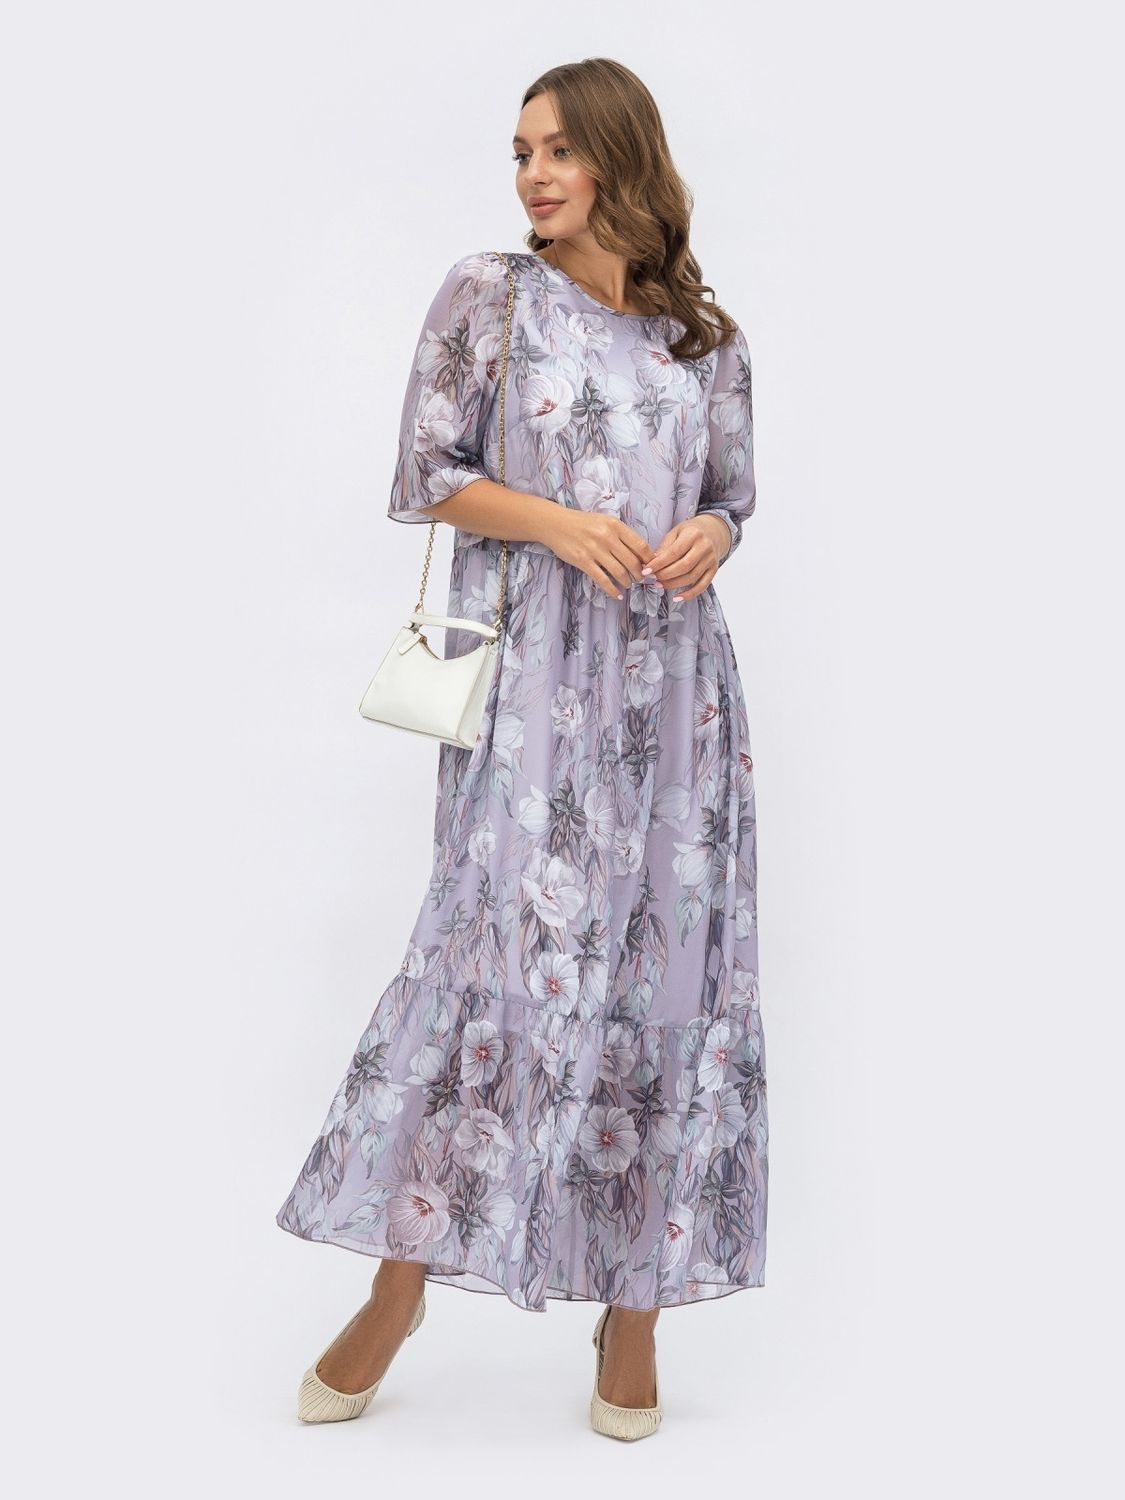 Шифоновое платье макси с цветочным принтом - фото